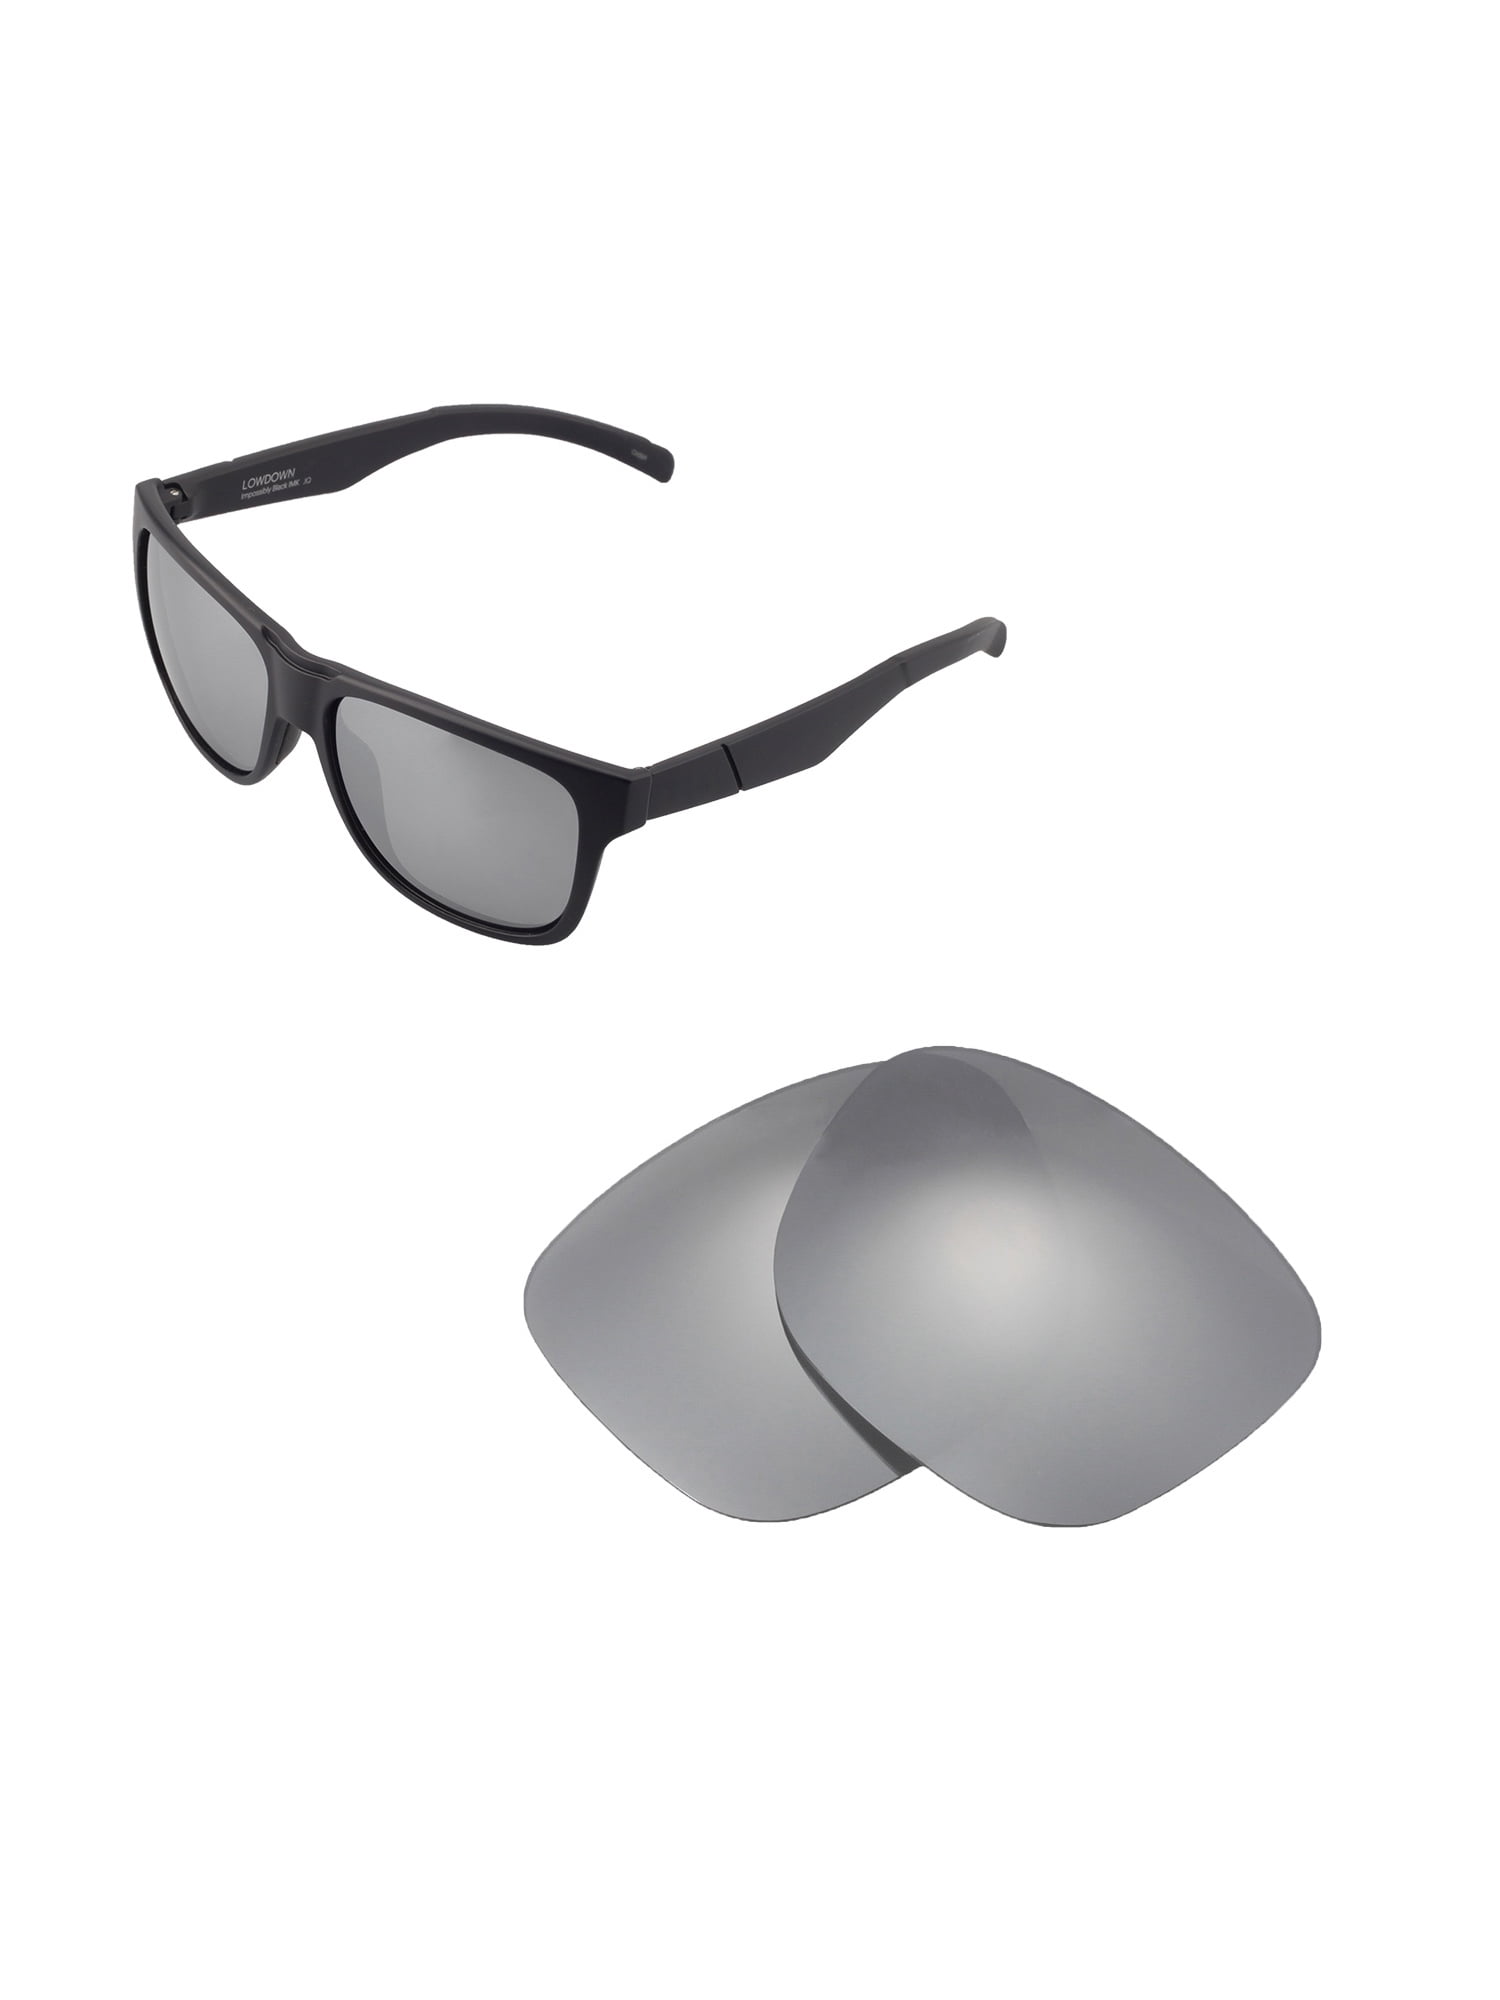 Walleva Polarized Titanium+Black Lenses For Smith Lowdown Sunglasses 